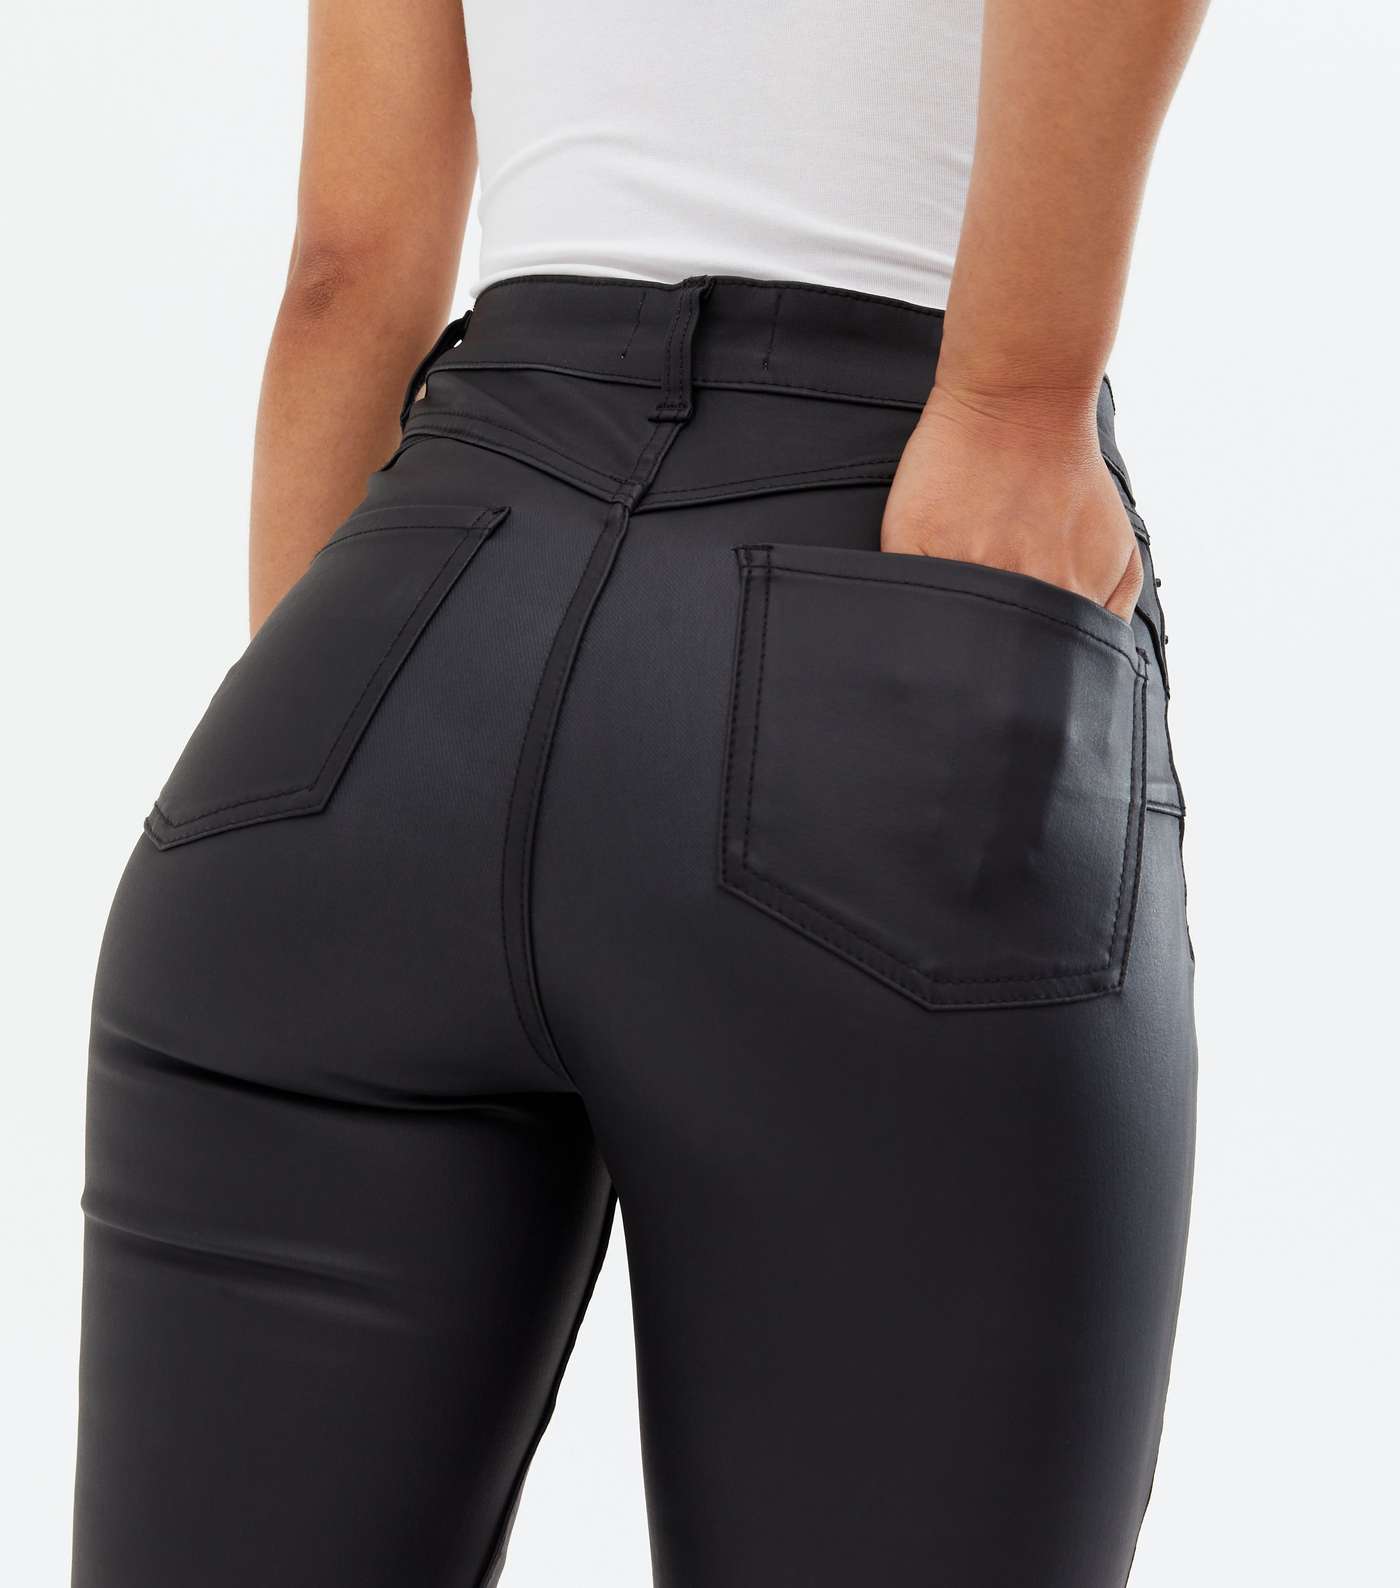 Tall Black Leather-Look High Waist Hallie Super Skinny Jeans Image 3